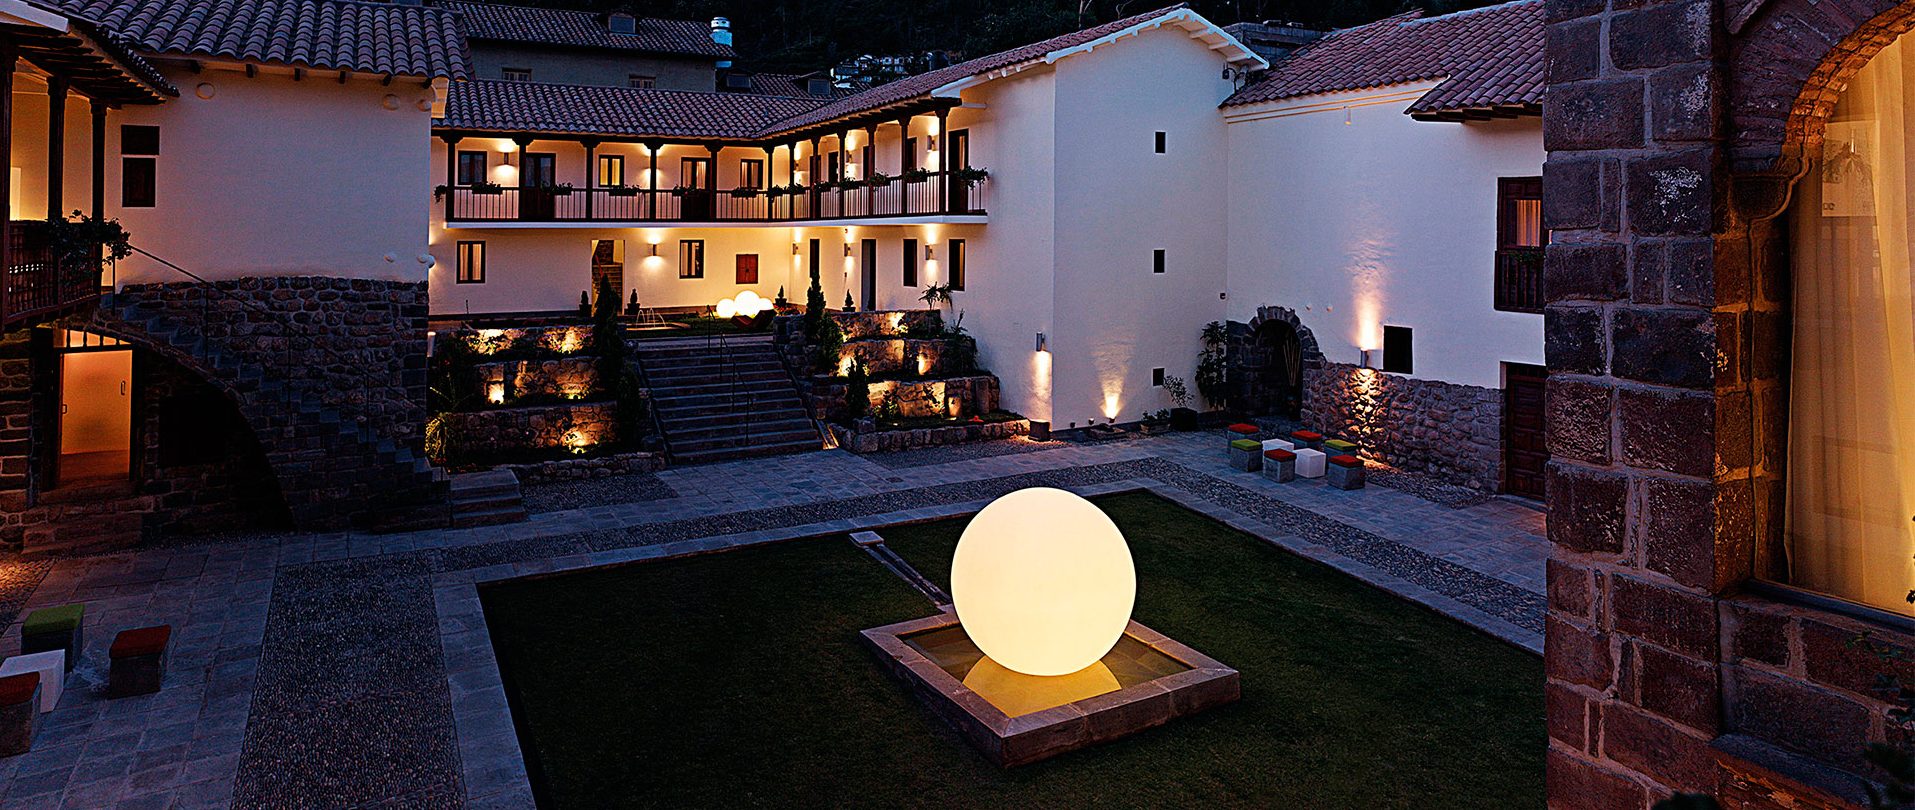 La touche moderne de la terrasse ! #boule #design  Boule lumineuse  exterieur, Luminaire exterieur, Boule lumineuse